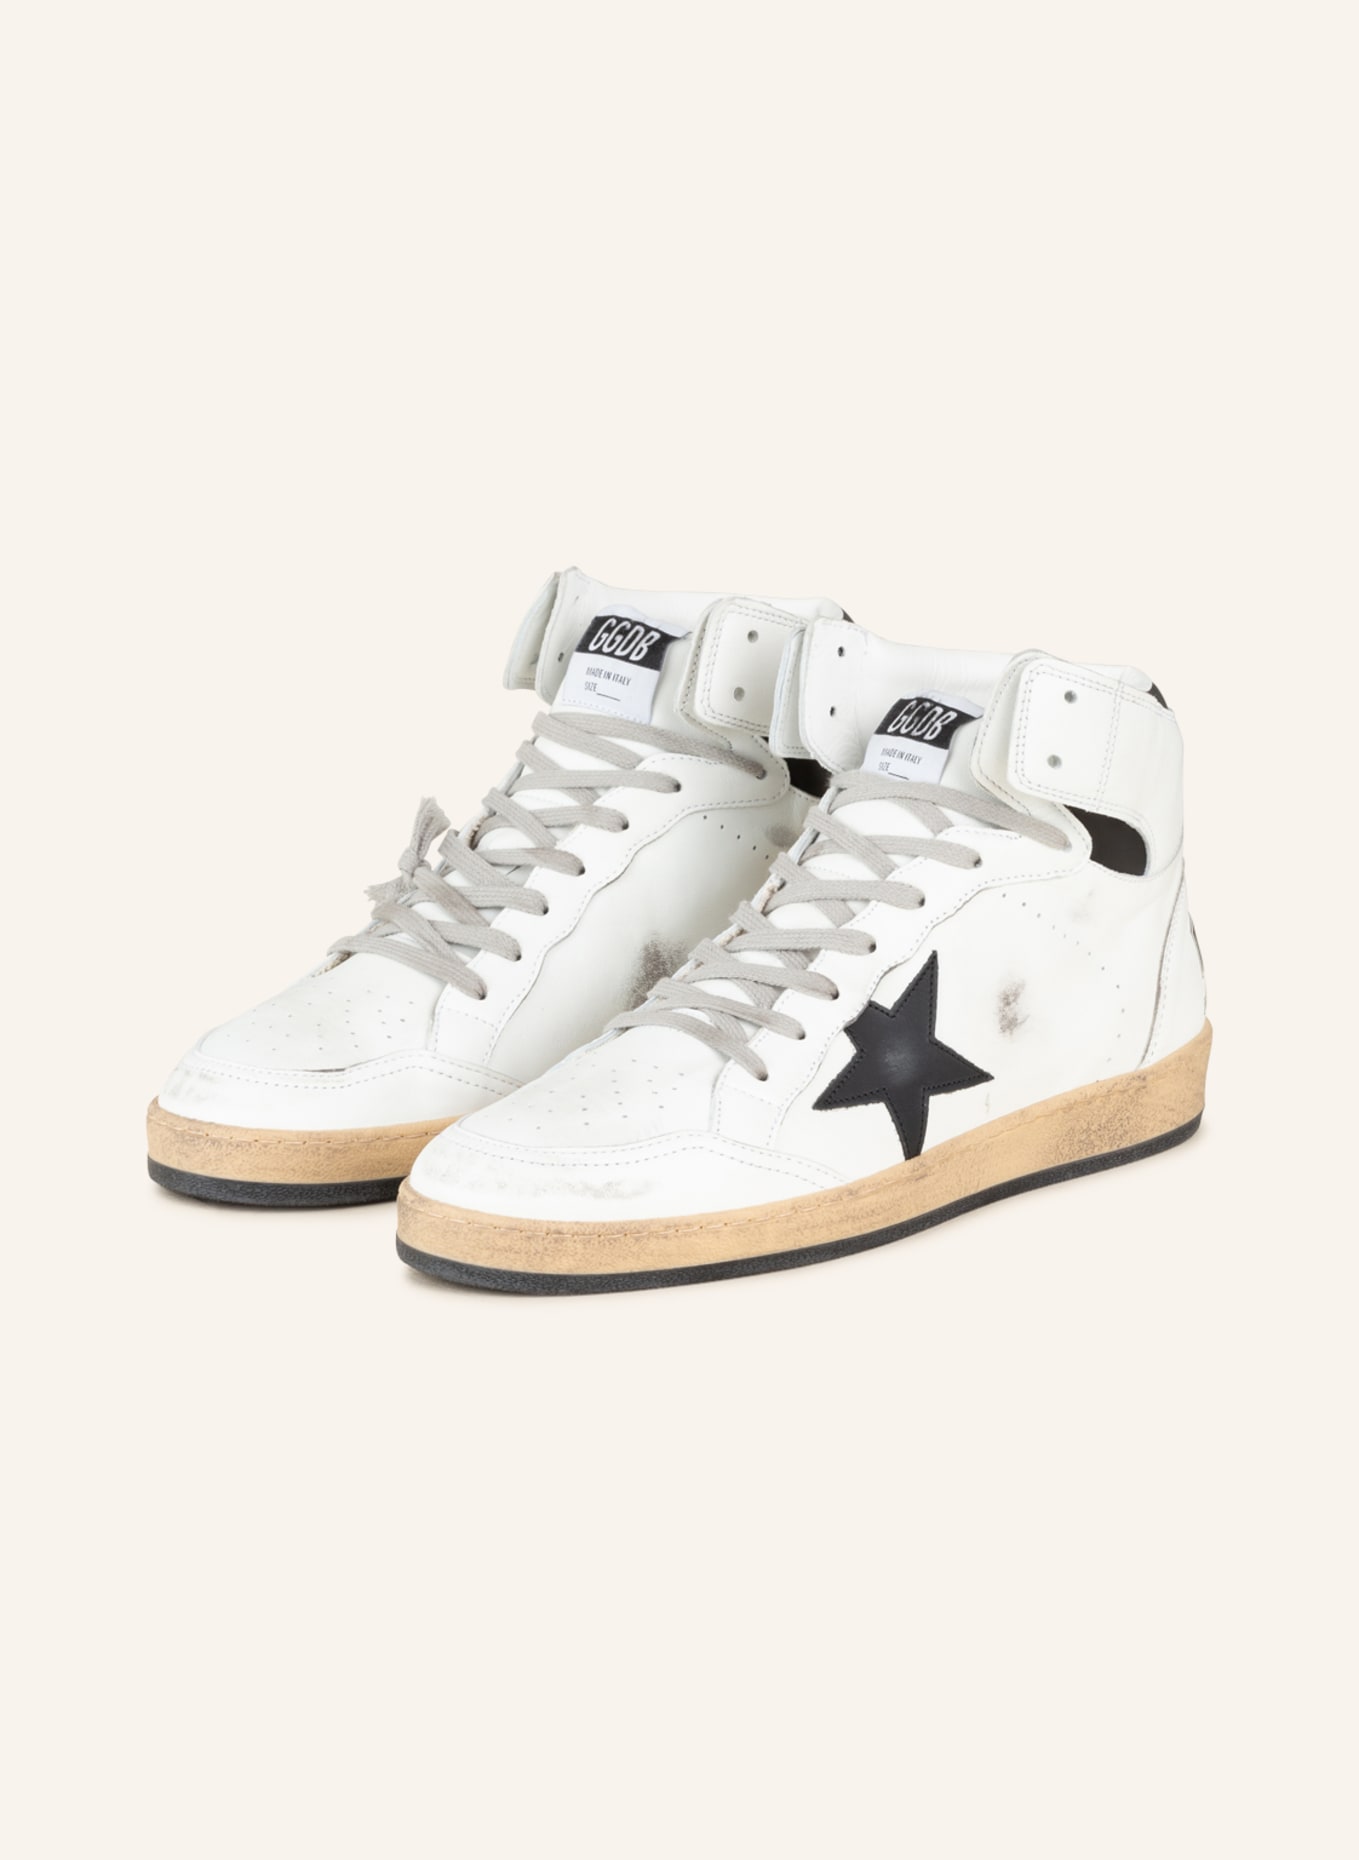 GOLDEN GOOSE Hightop-Sneaker SKY-STAR, Farbe: WEISS/ SCHWARZ (Bild 1)